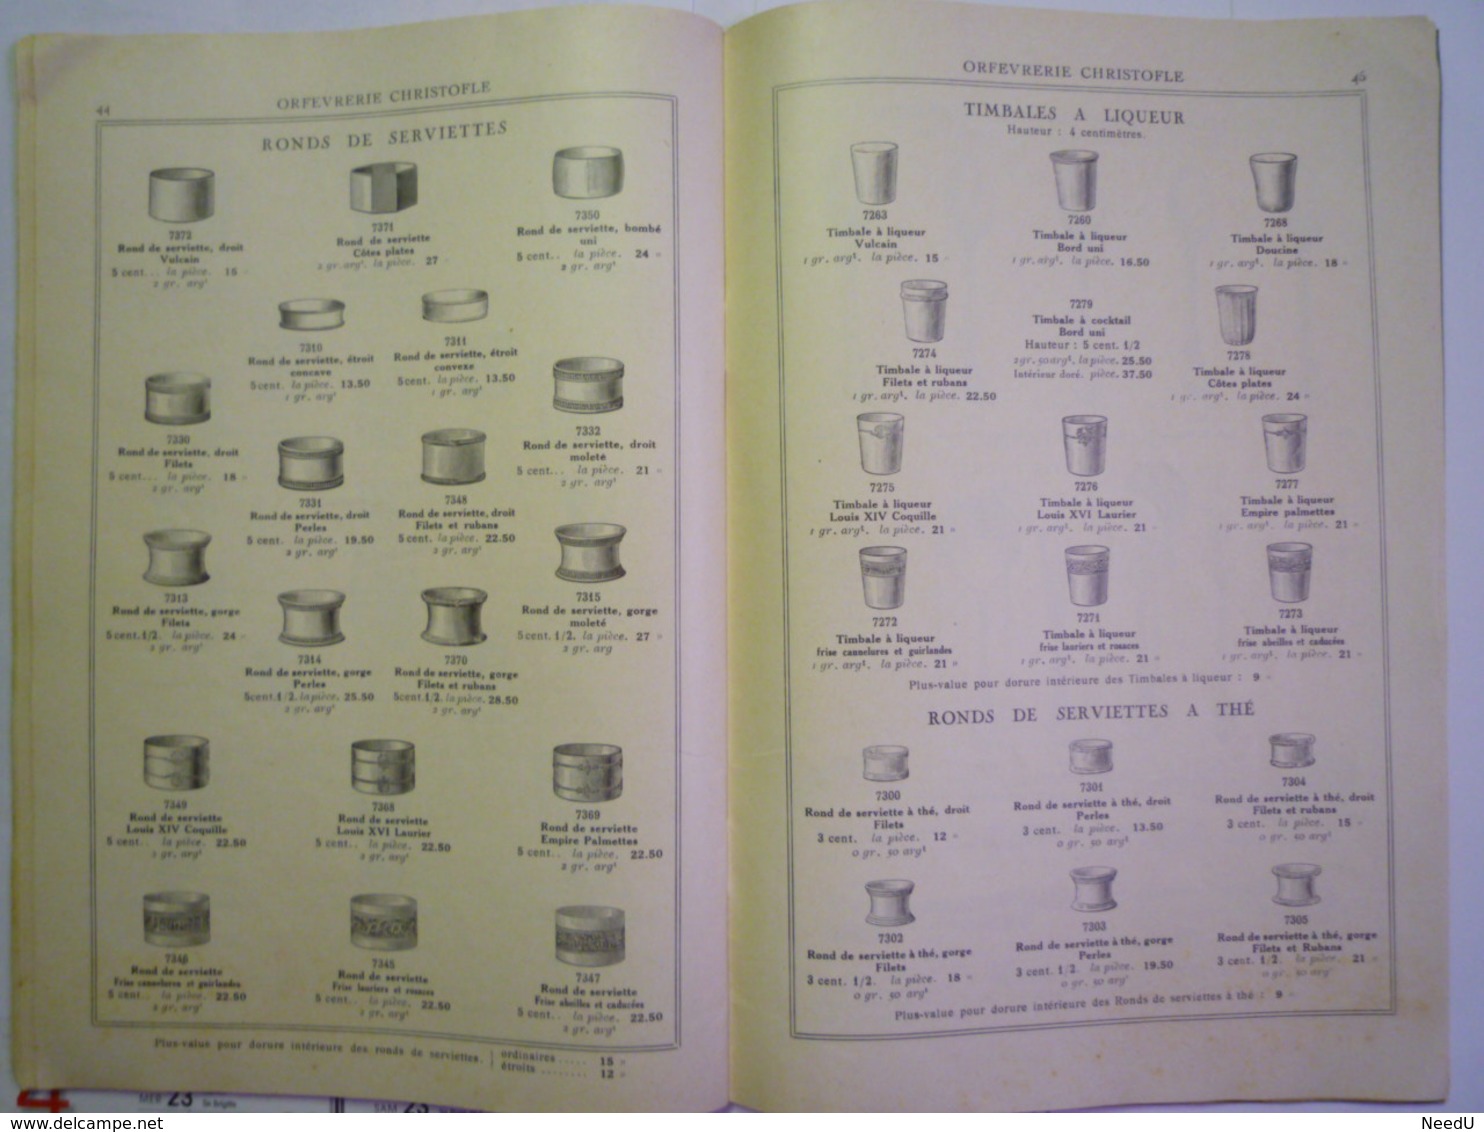 GP 2019 - 1937  CATALOGUE "CHRISTOFLE"  N°4  1927  Couverts et petite orfèvrerie  (55 pages)  XXX